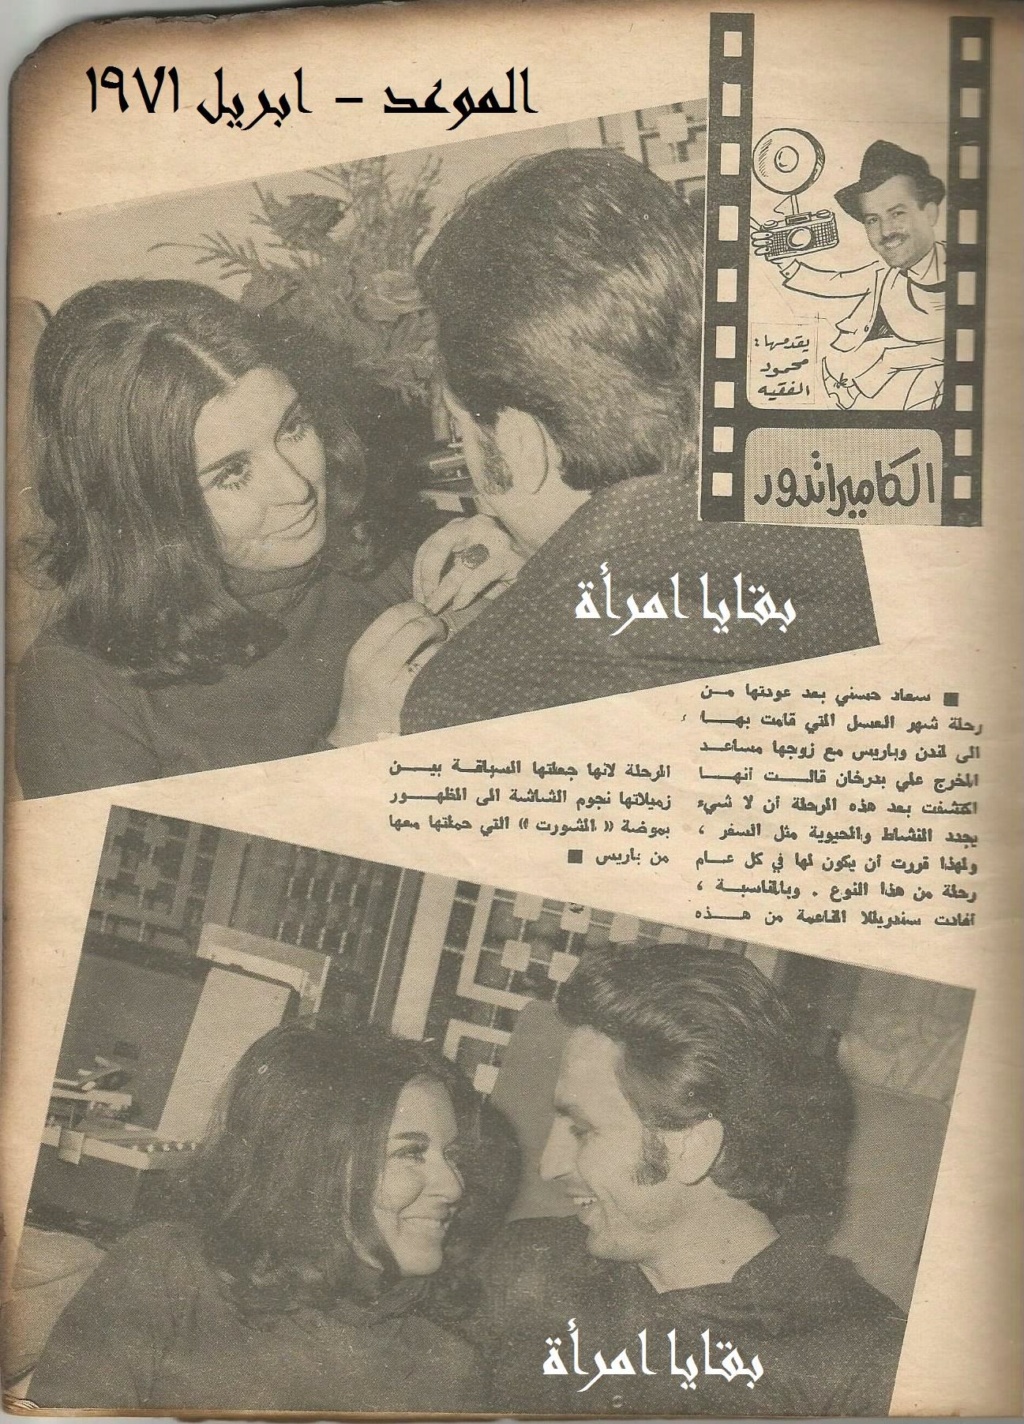 1971 - خبر صحفي : الكاميرا تدور 1971 م Aaao_o10